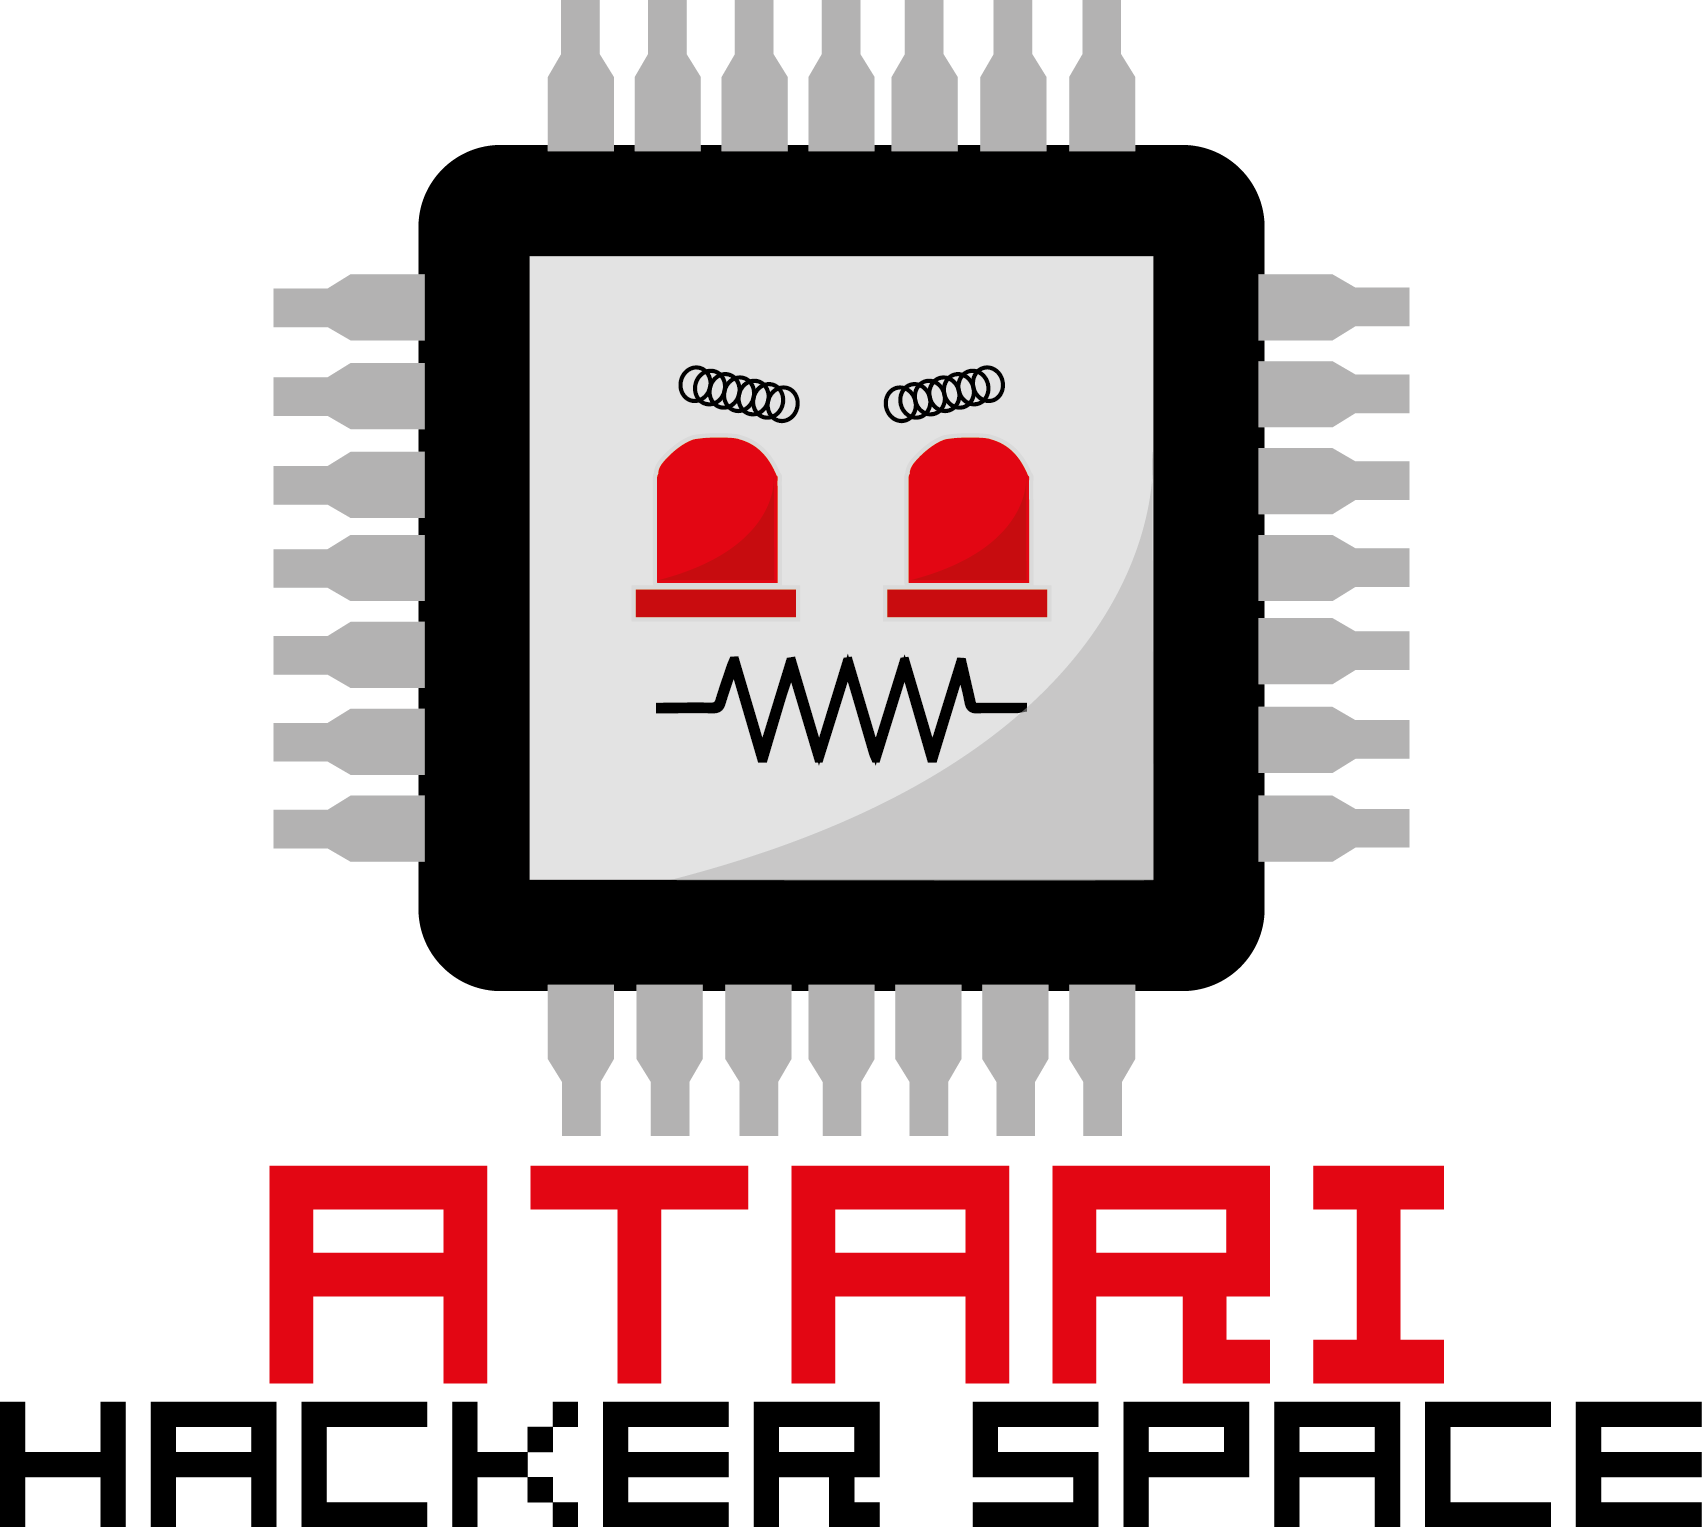 Atari.png